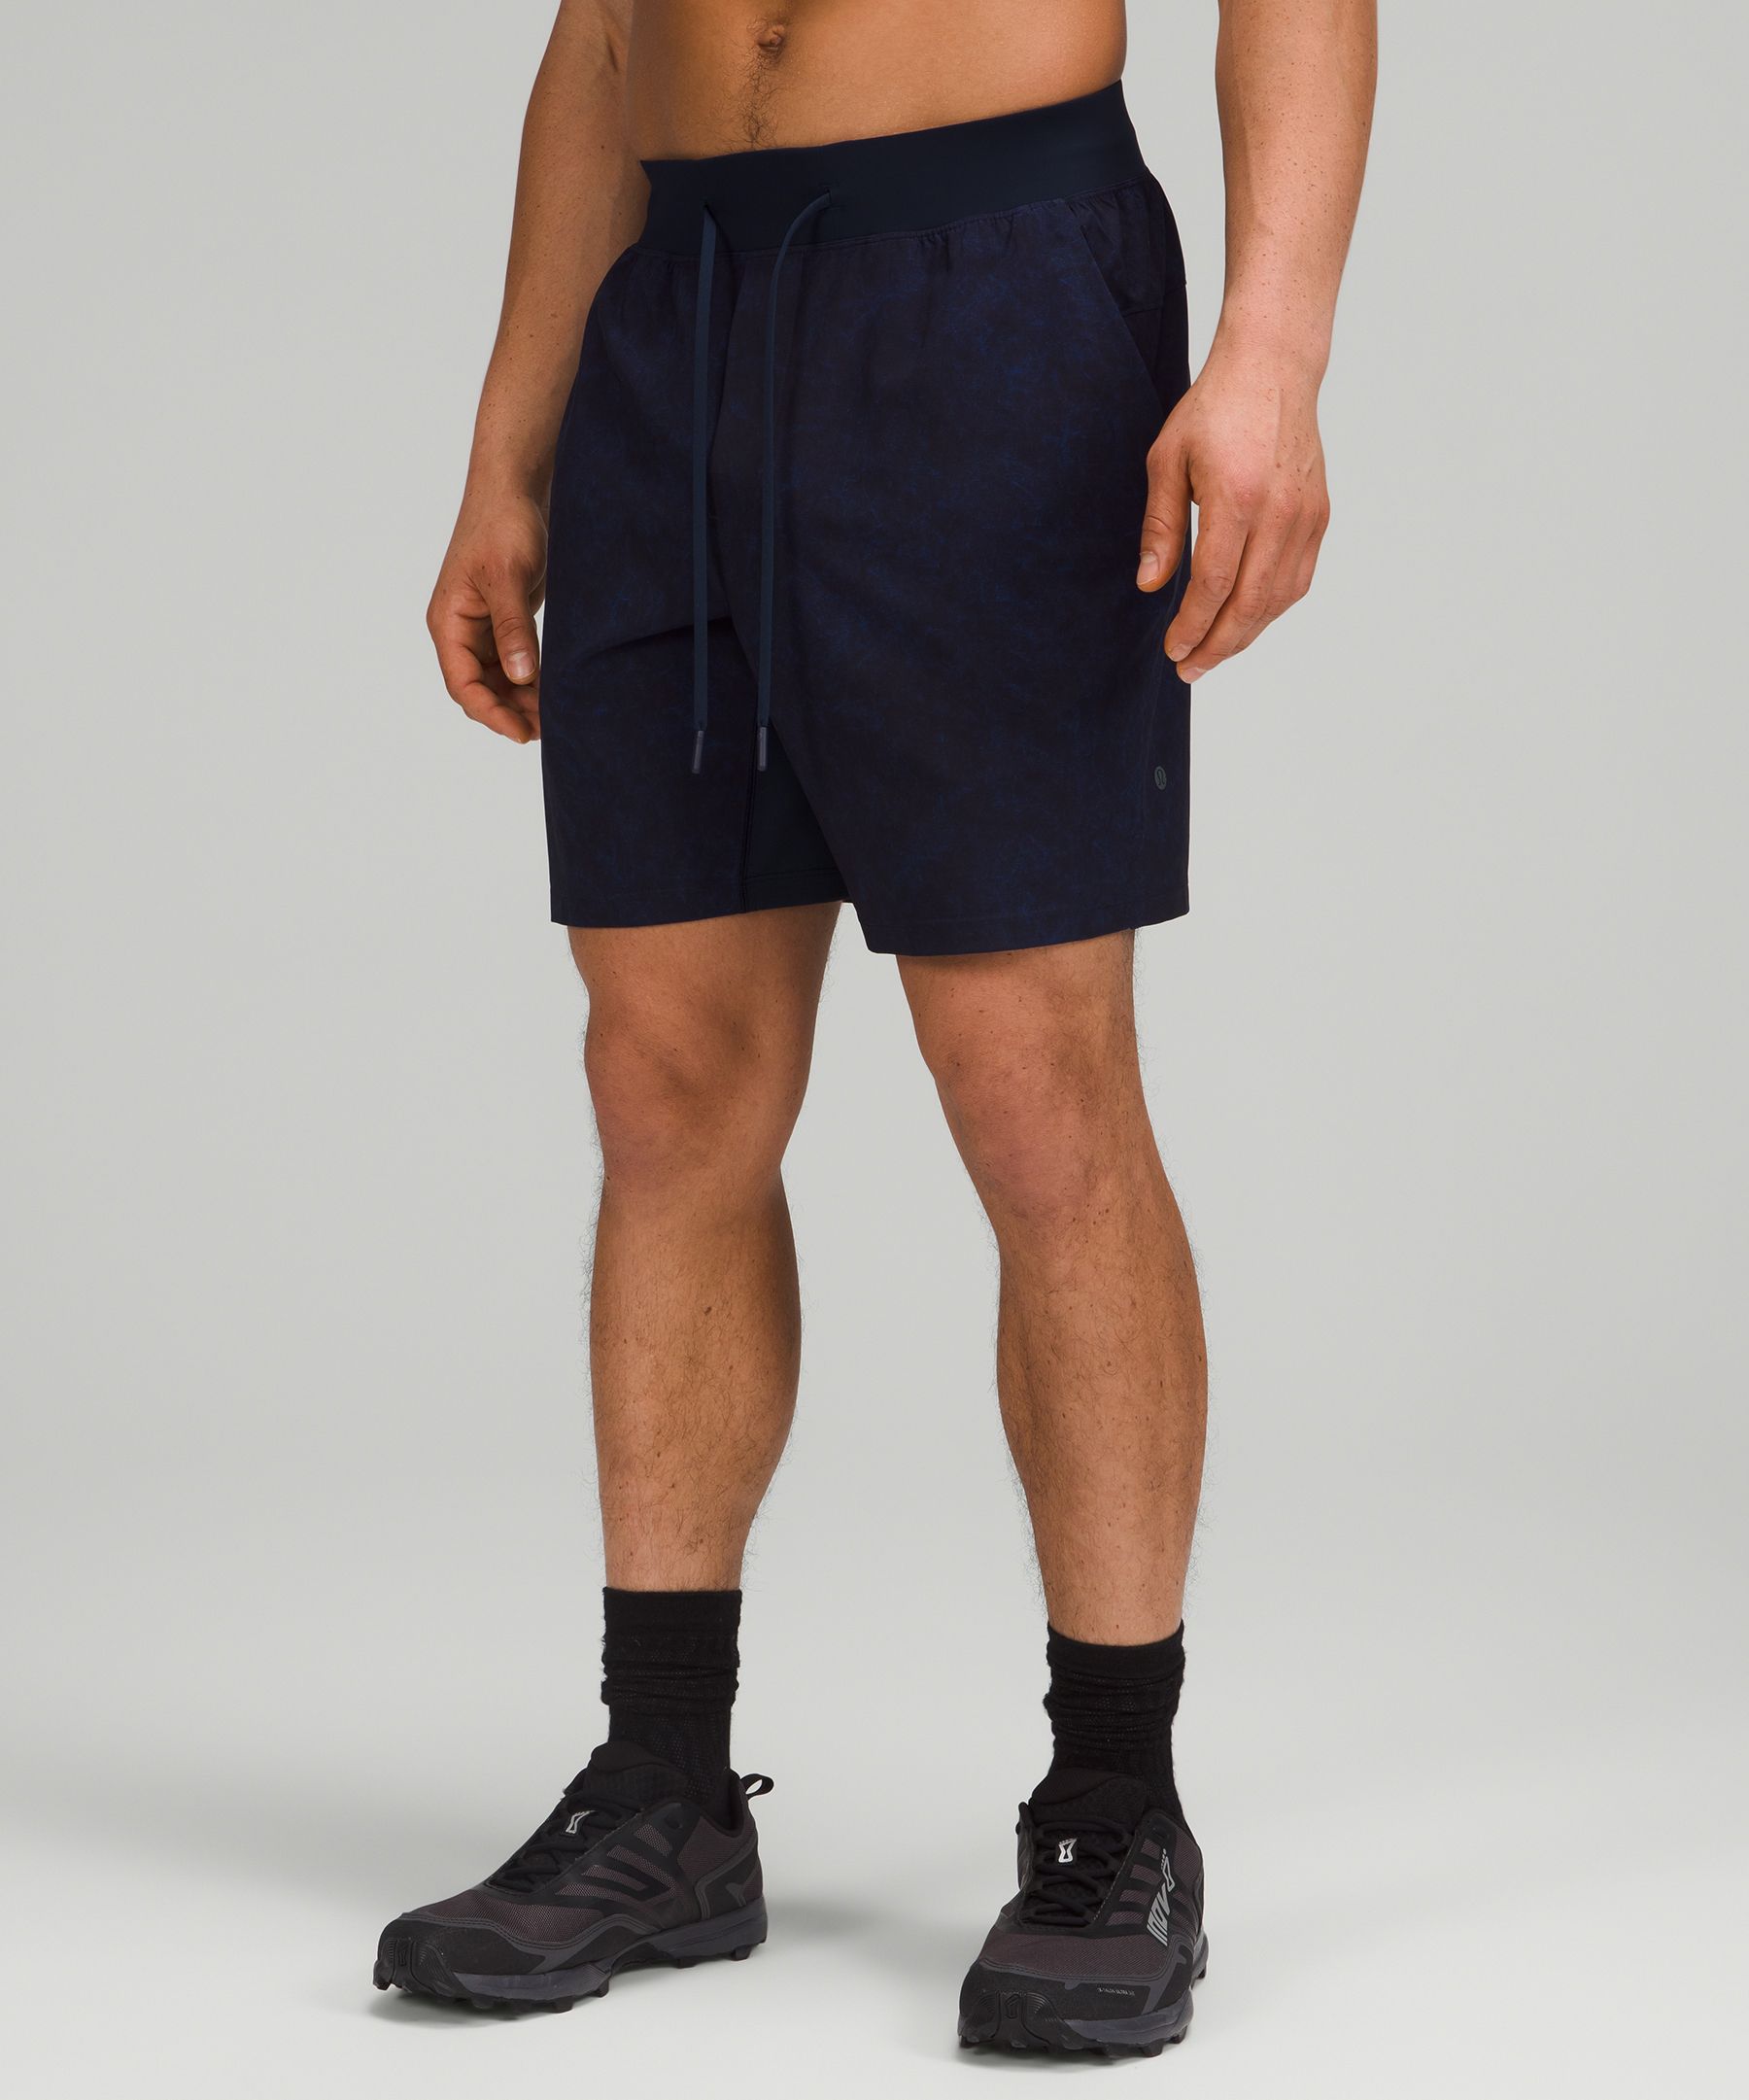 lululemon mens shorts sizing